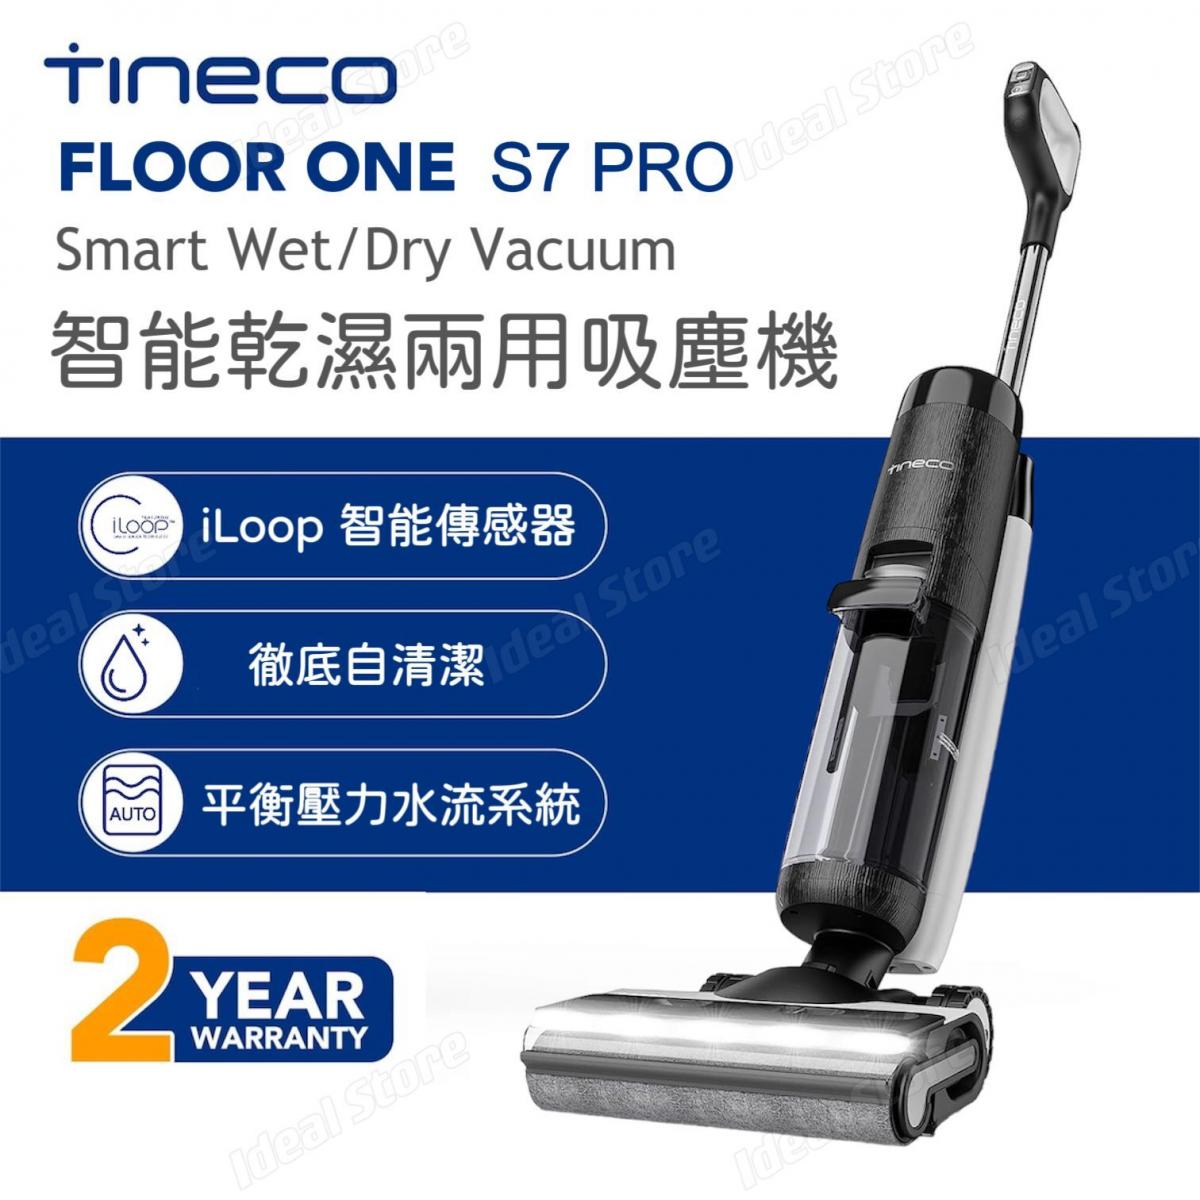 FLOOR ONE S7 PRO Wet Dry Vacuum